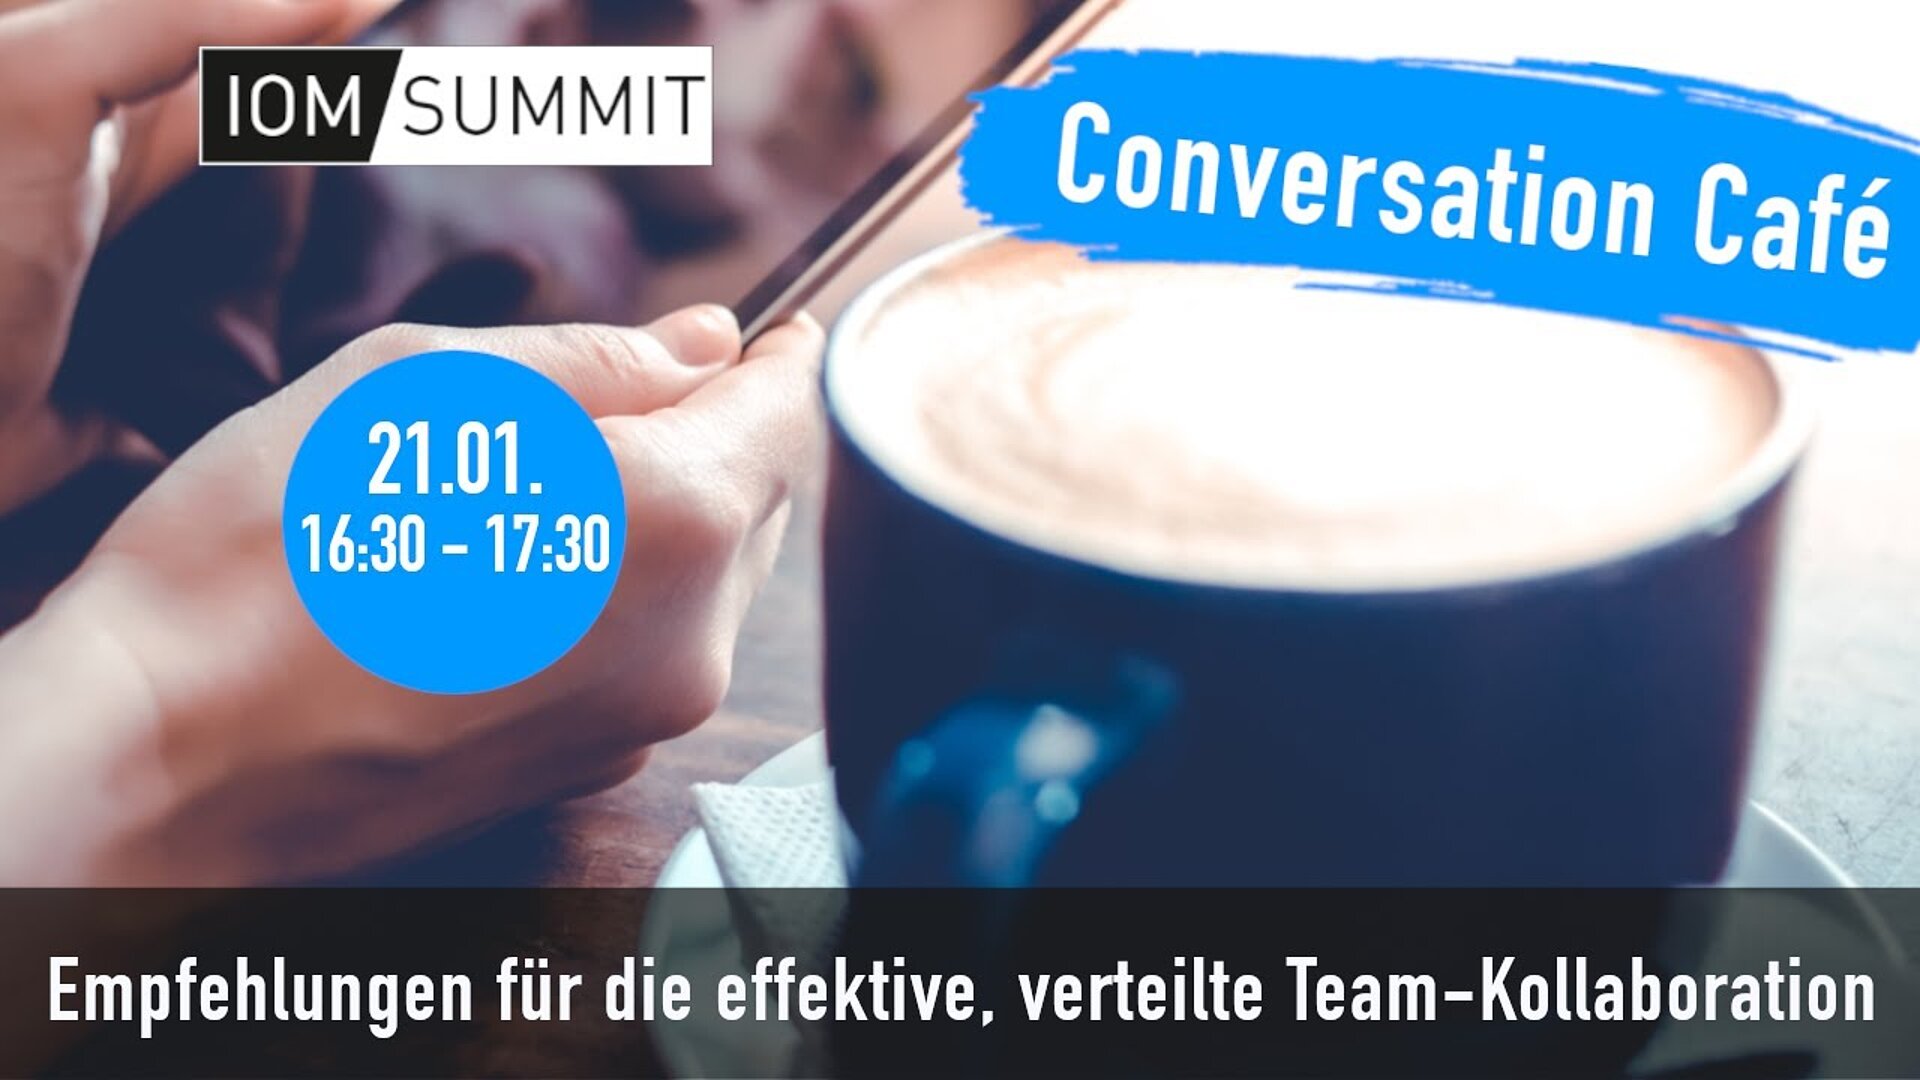 Conversation Café: Empfehlungen für die effektive, verteilte Team-Kollaboration